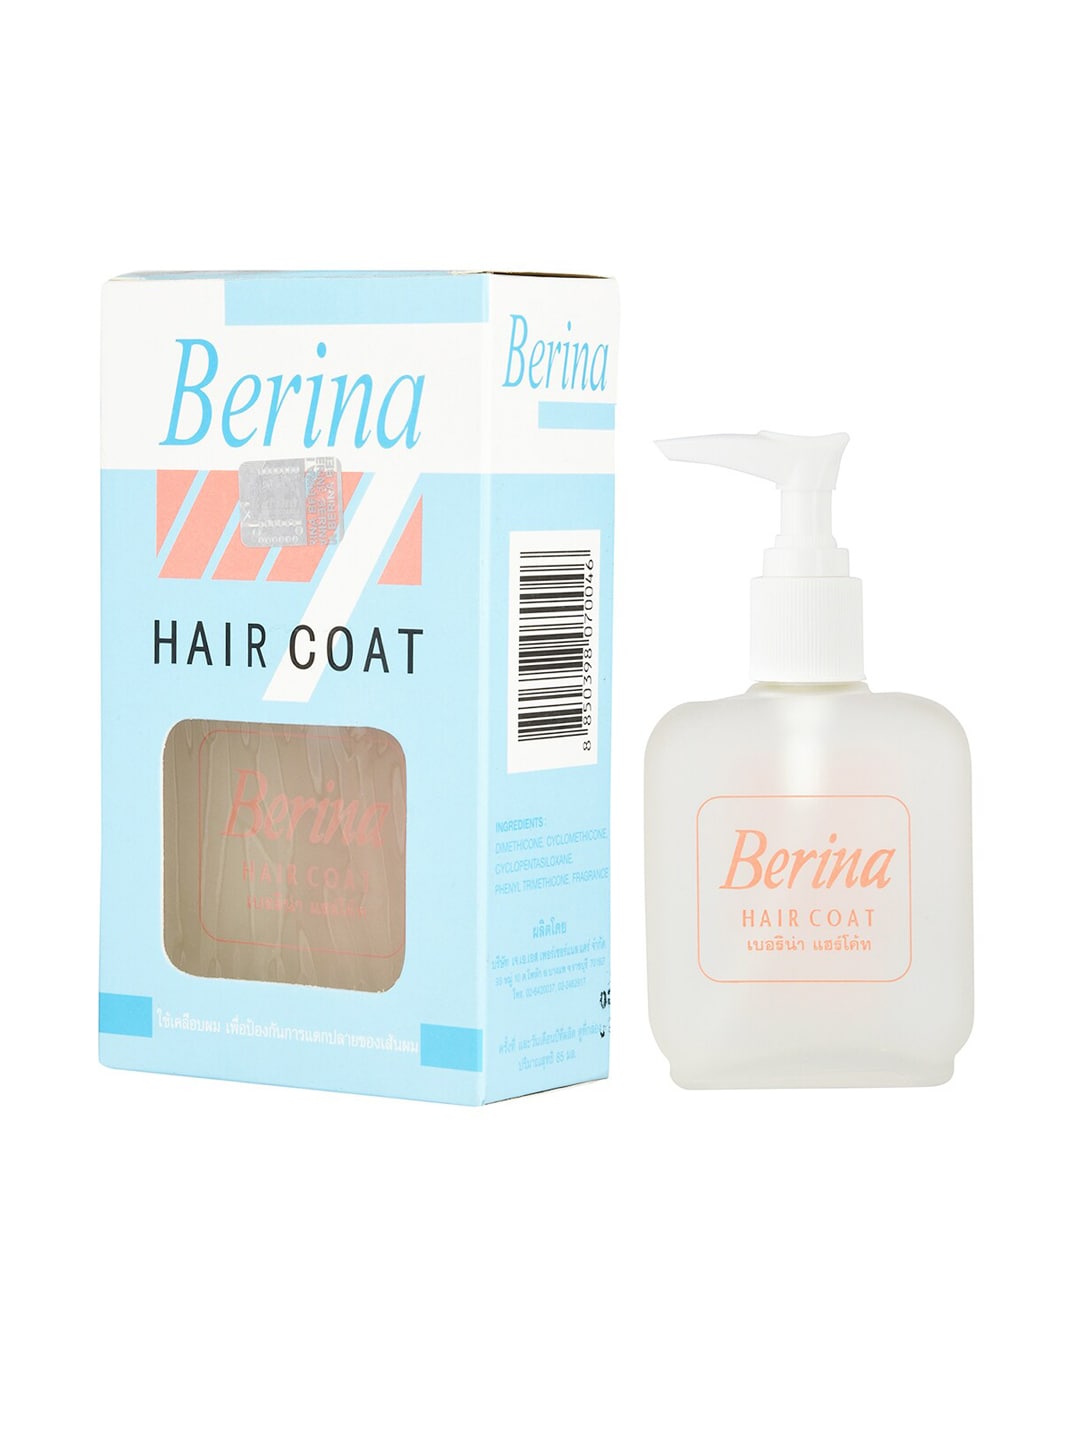 Berina Transparent Hair Coat Serum 85 ml Price in India